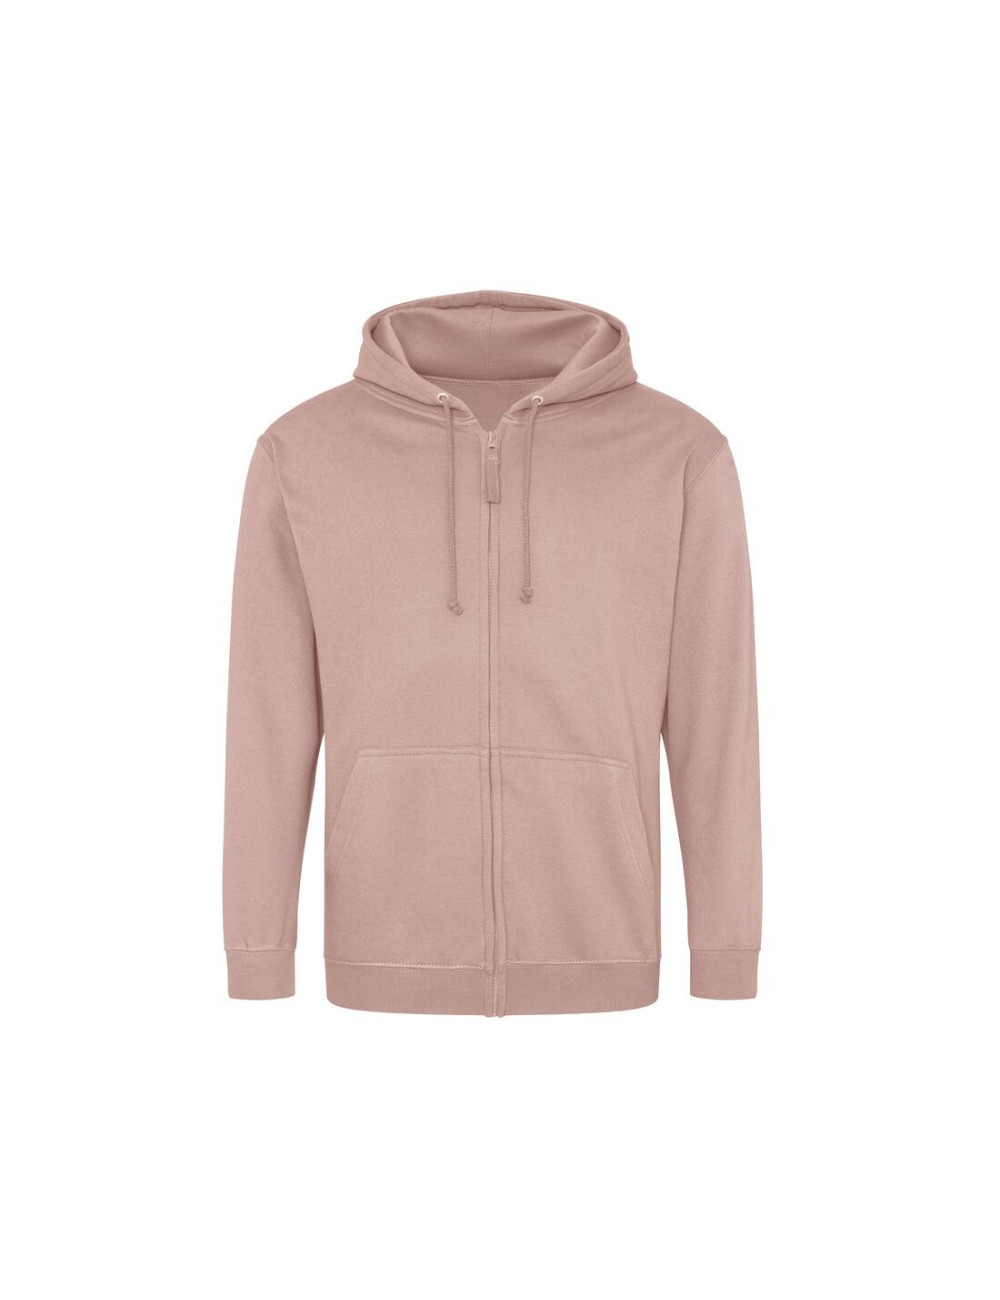 AWDIS JH050 - Zipped sweatshirt  Colors:Dusty Pink 